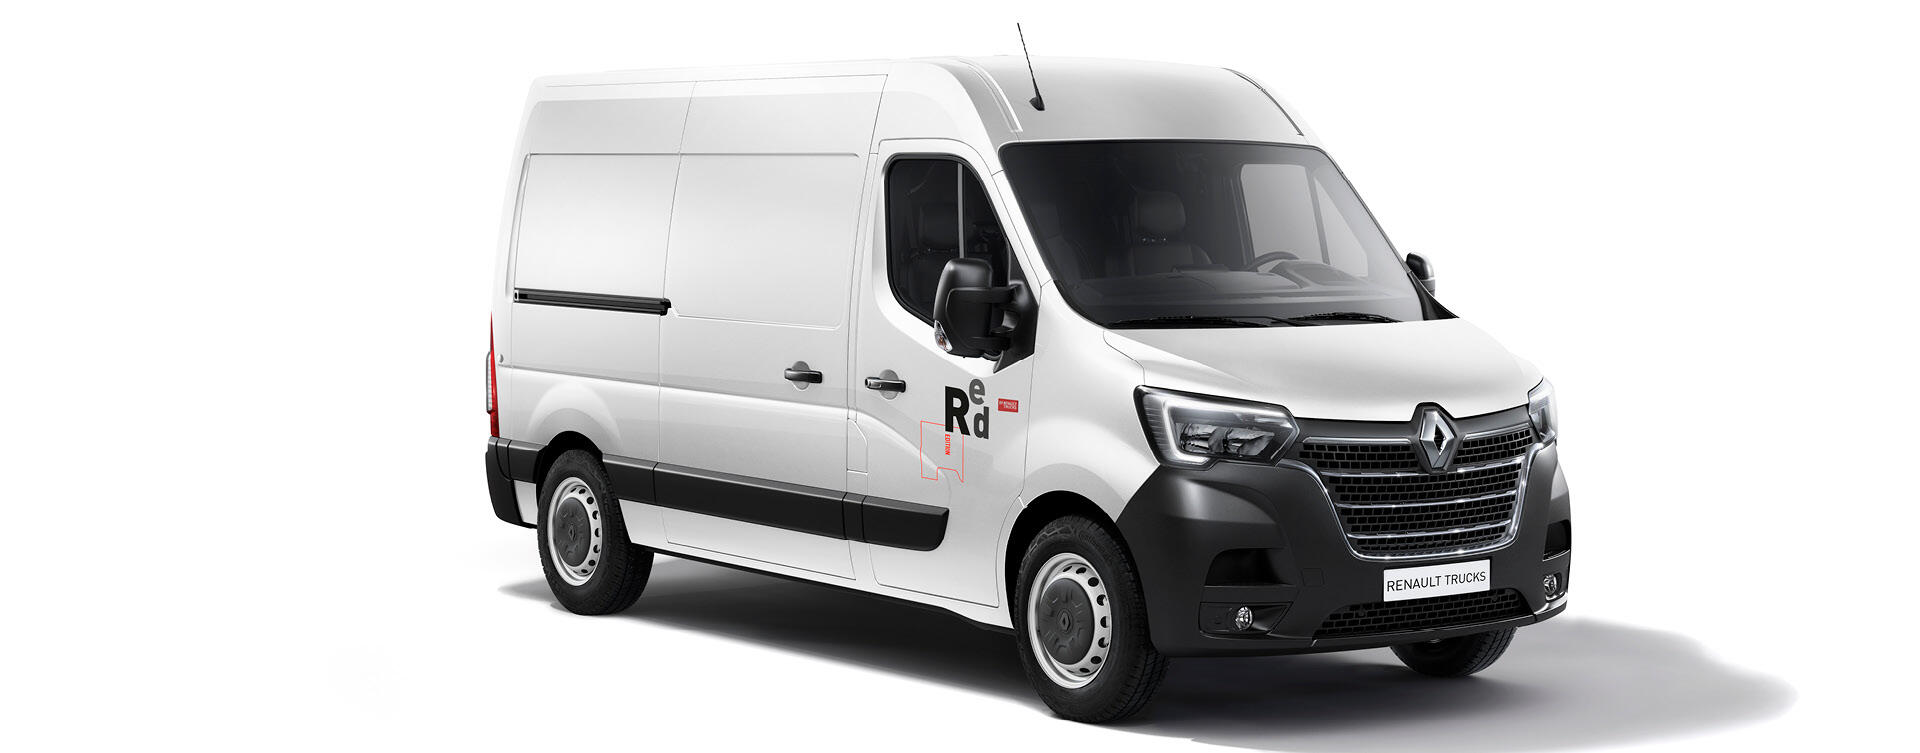 Nieuwe Renault Master Red EDITION: ontdek de nieuwe features aan de buitenkant